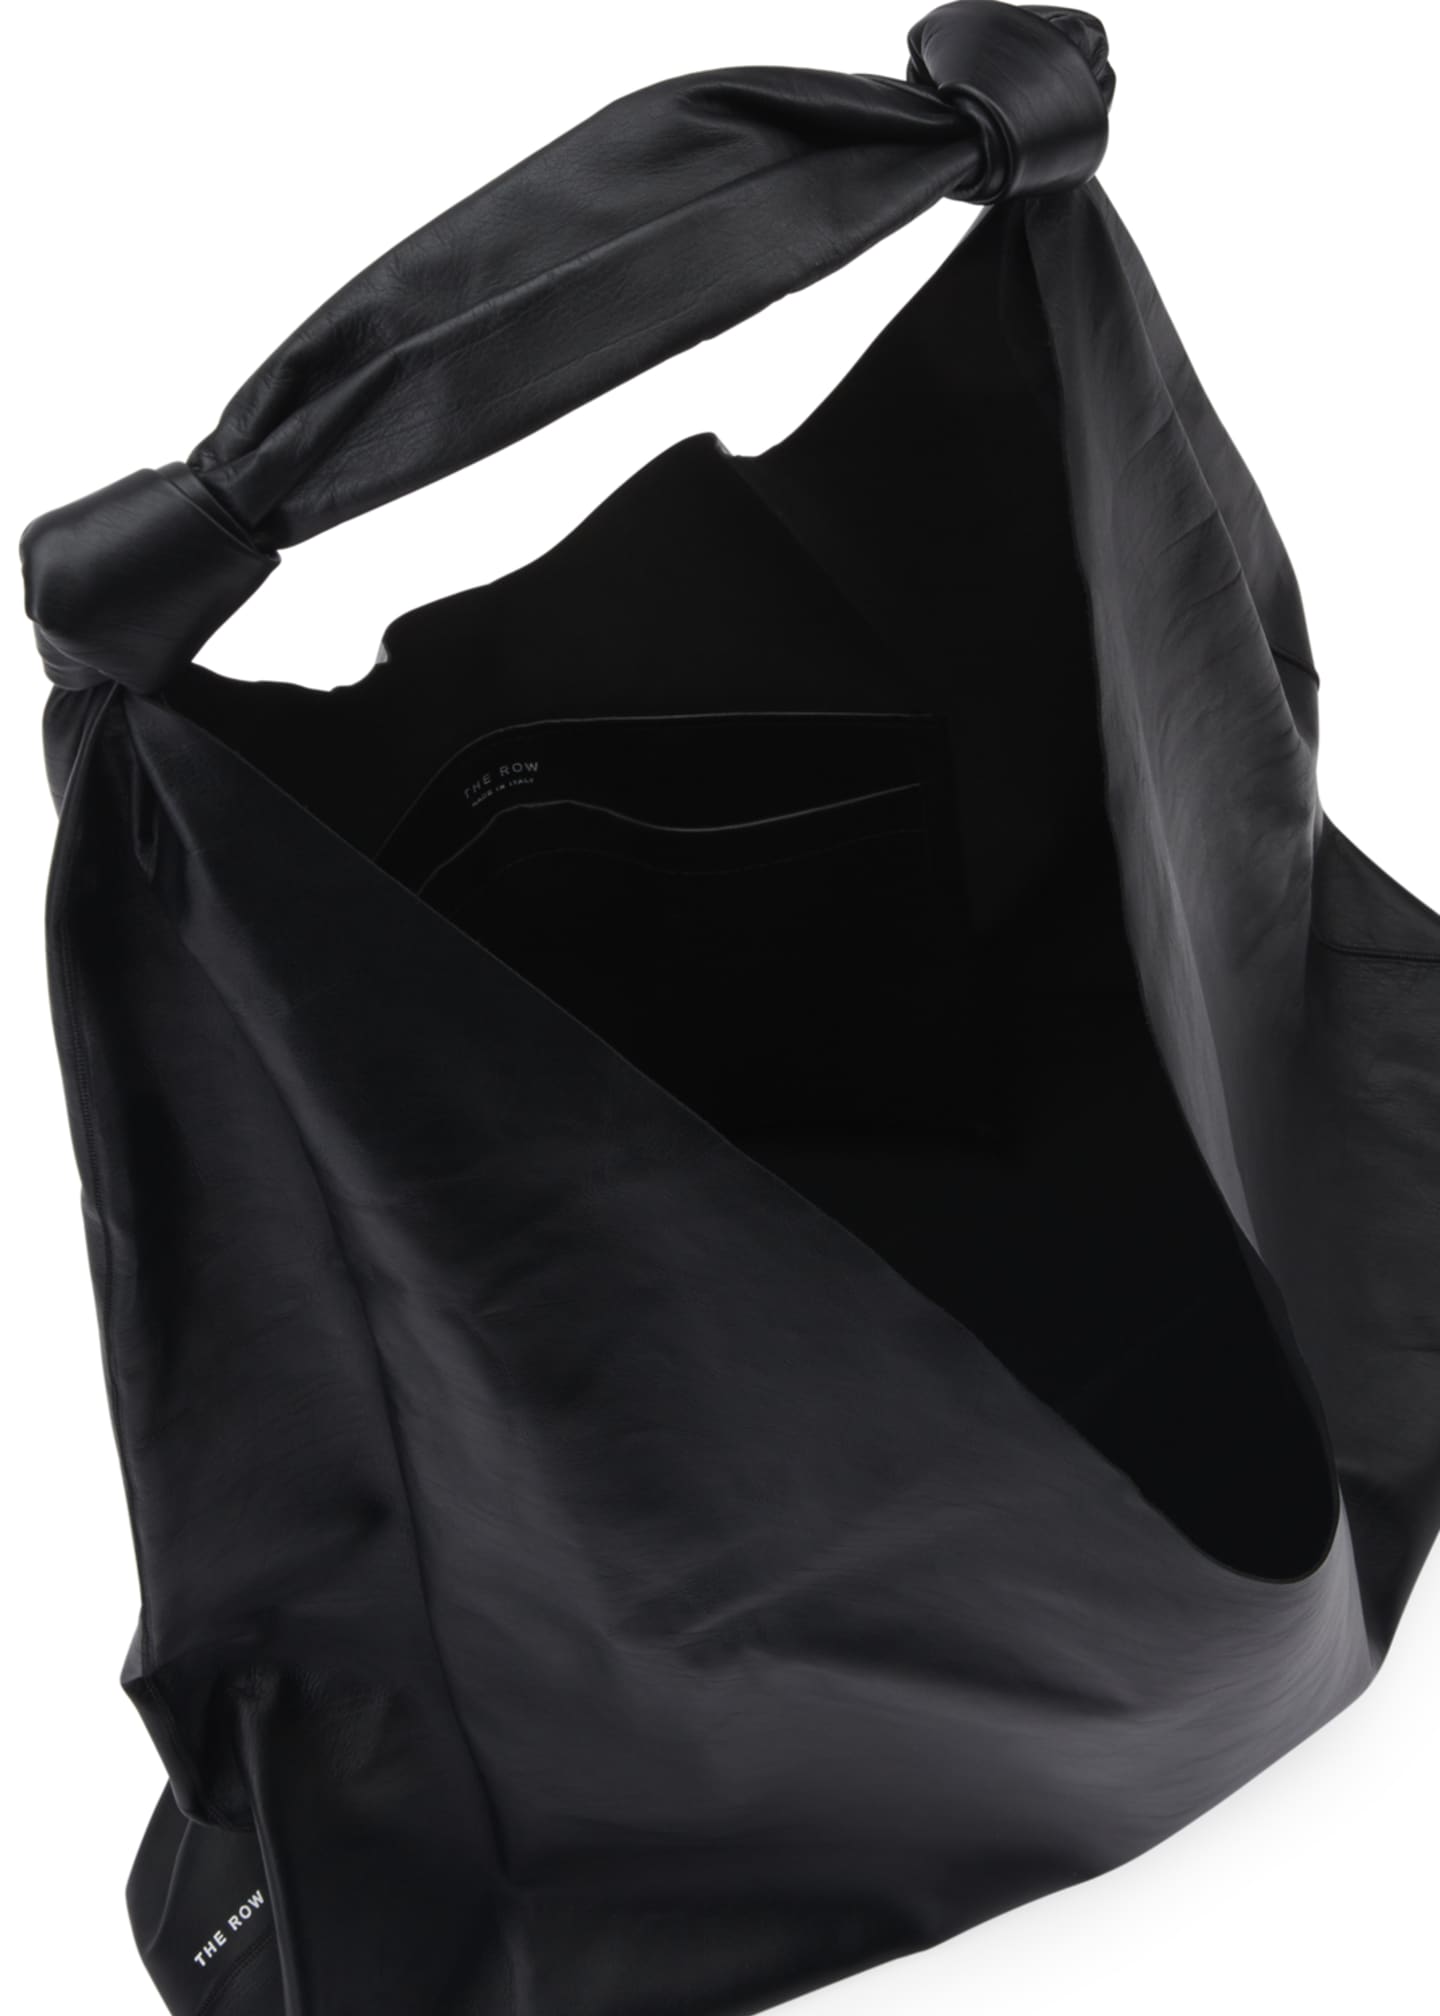 THE ROW Bindle Two Bag in Napa Leather - Bergdorf Goodman